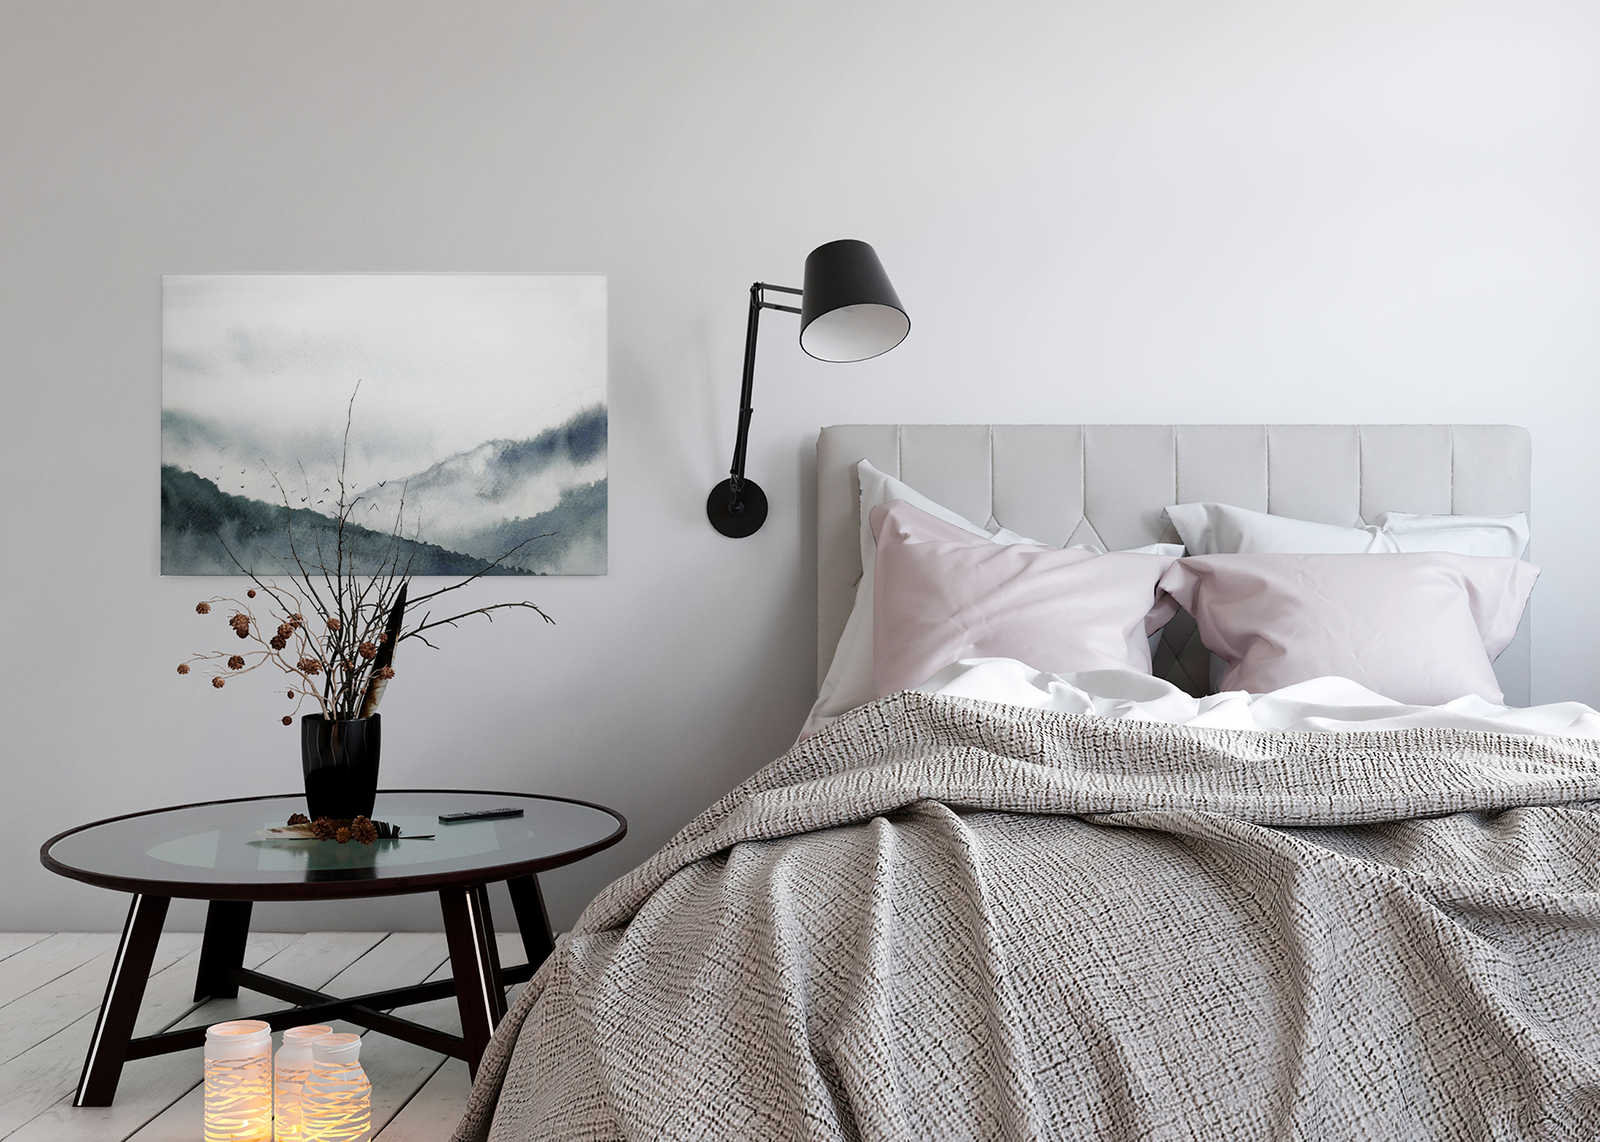             Toile avec paysage brumeux style peinture | gris, noir - 0,90 m x 0,60 m
        